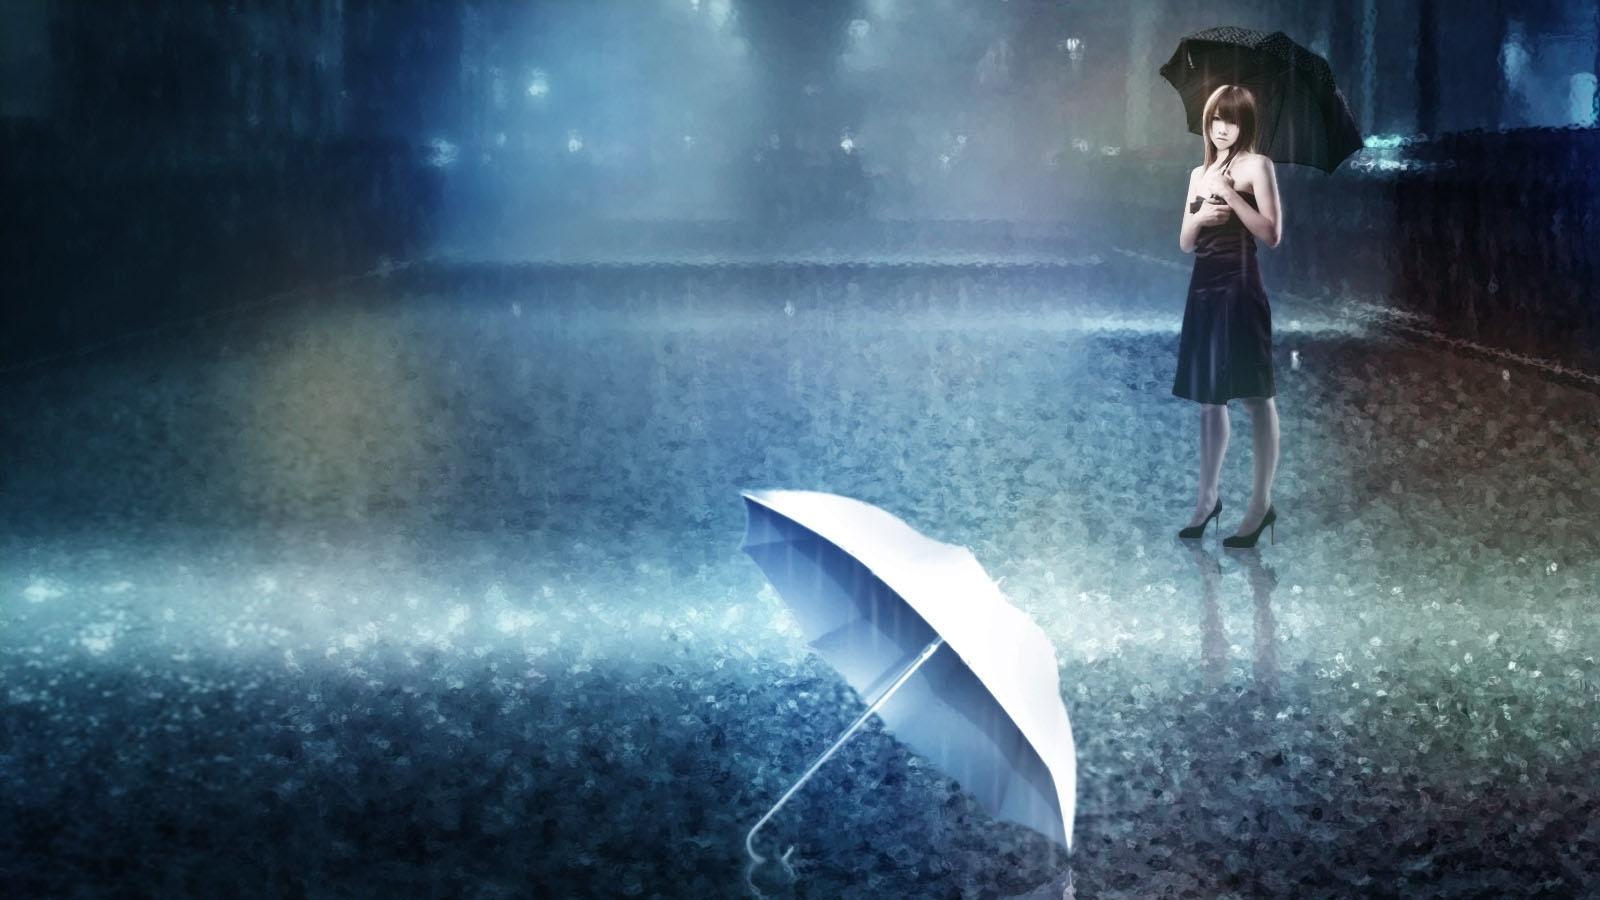 雨中伤感撑伞女孩图片 - 电脑壁纸 - 网页图库